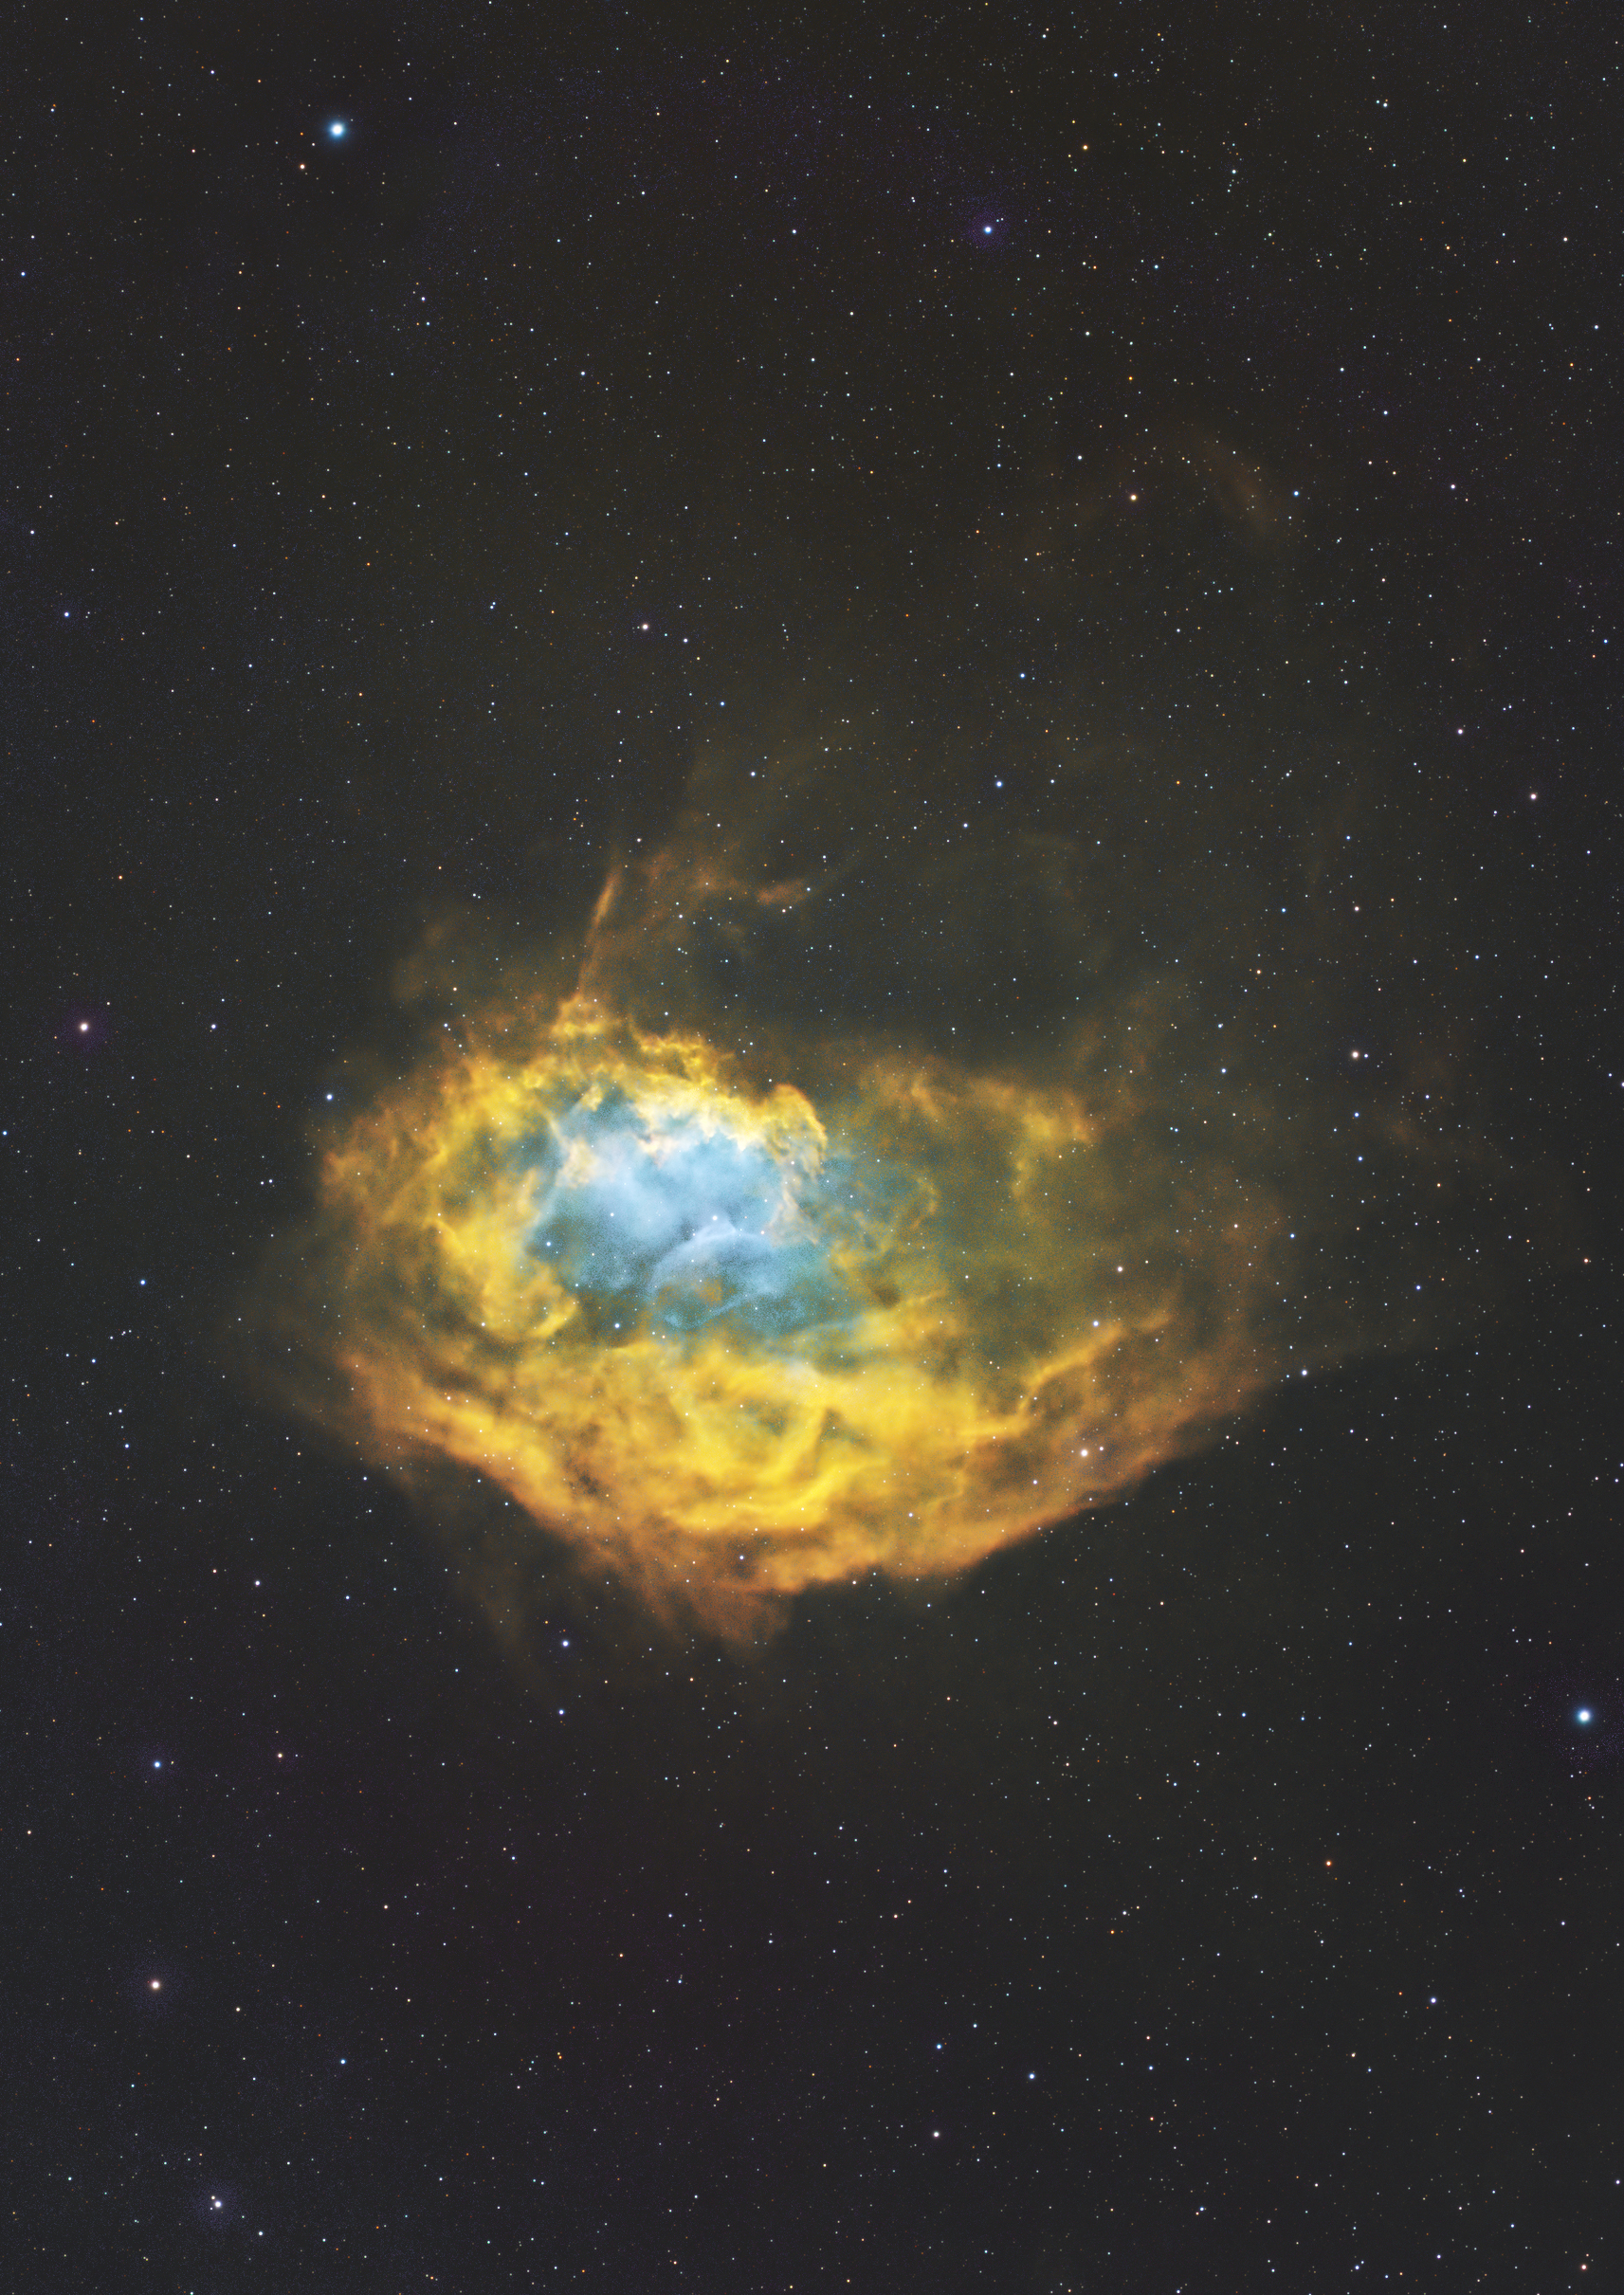  SH2-261 Lower's Nebula